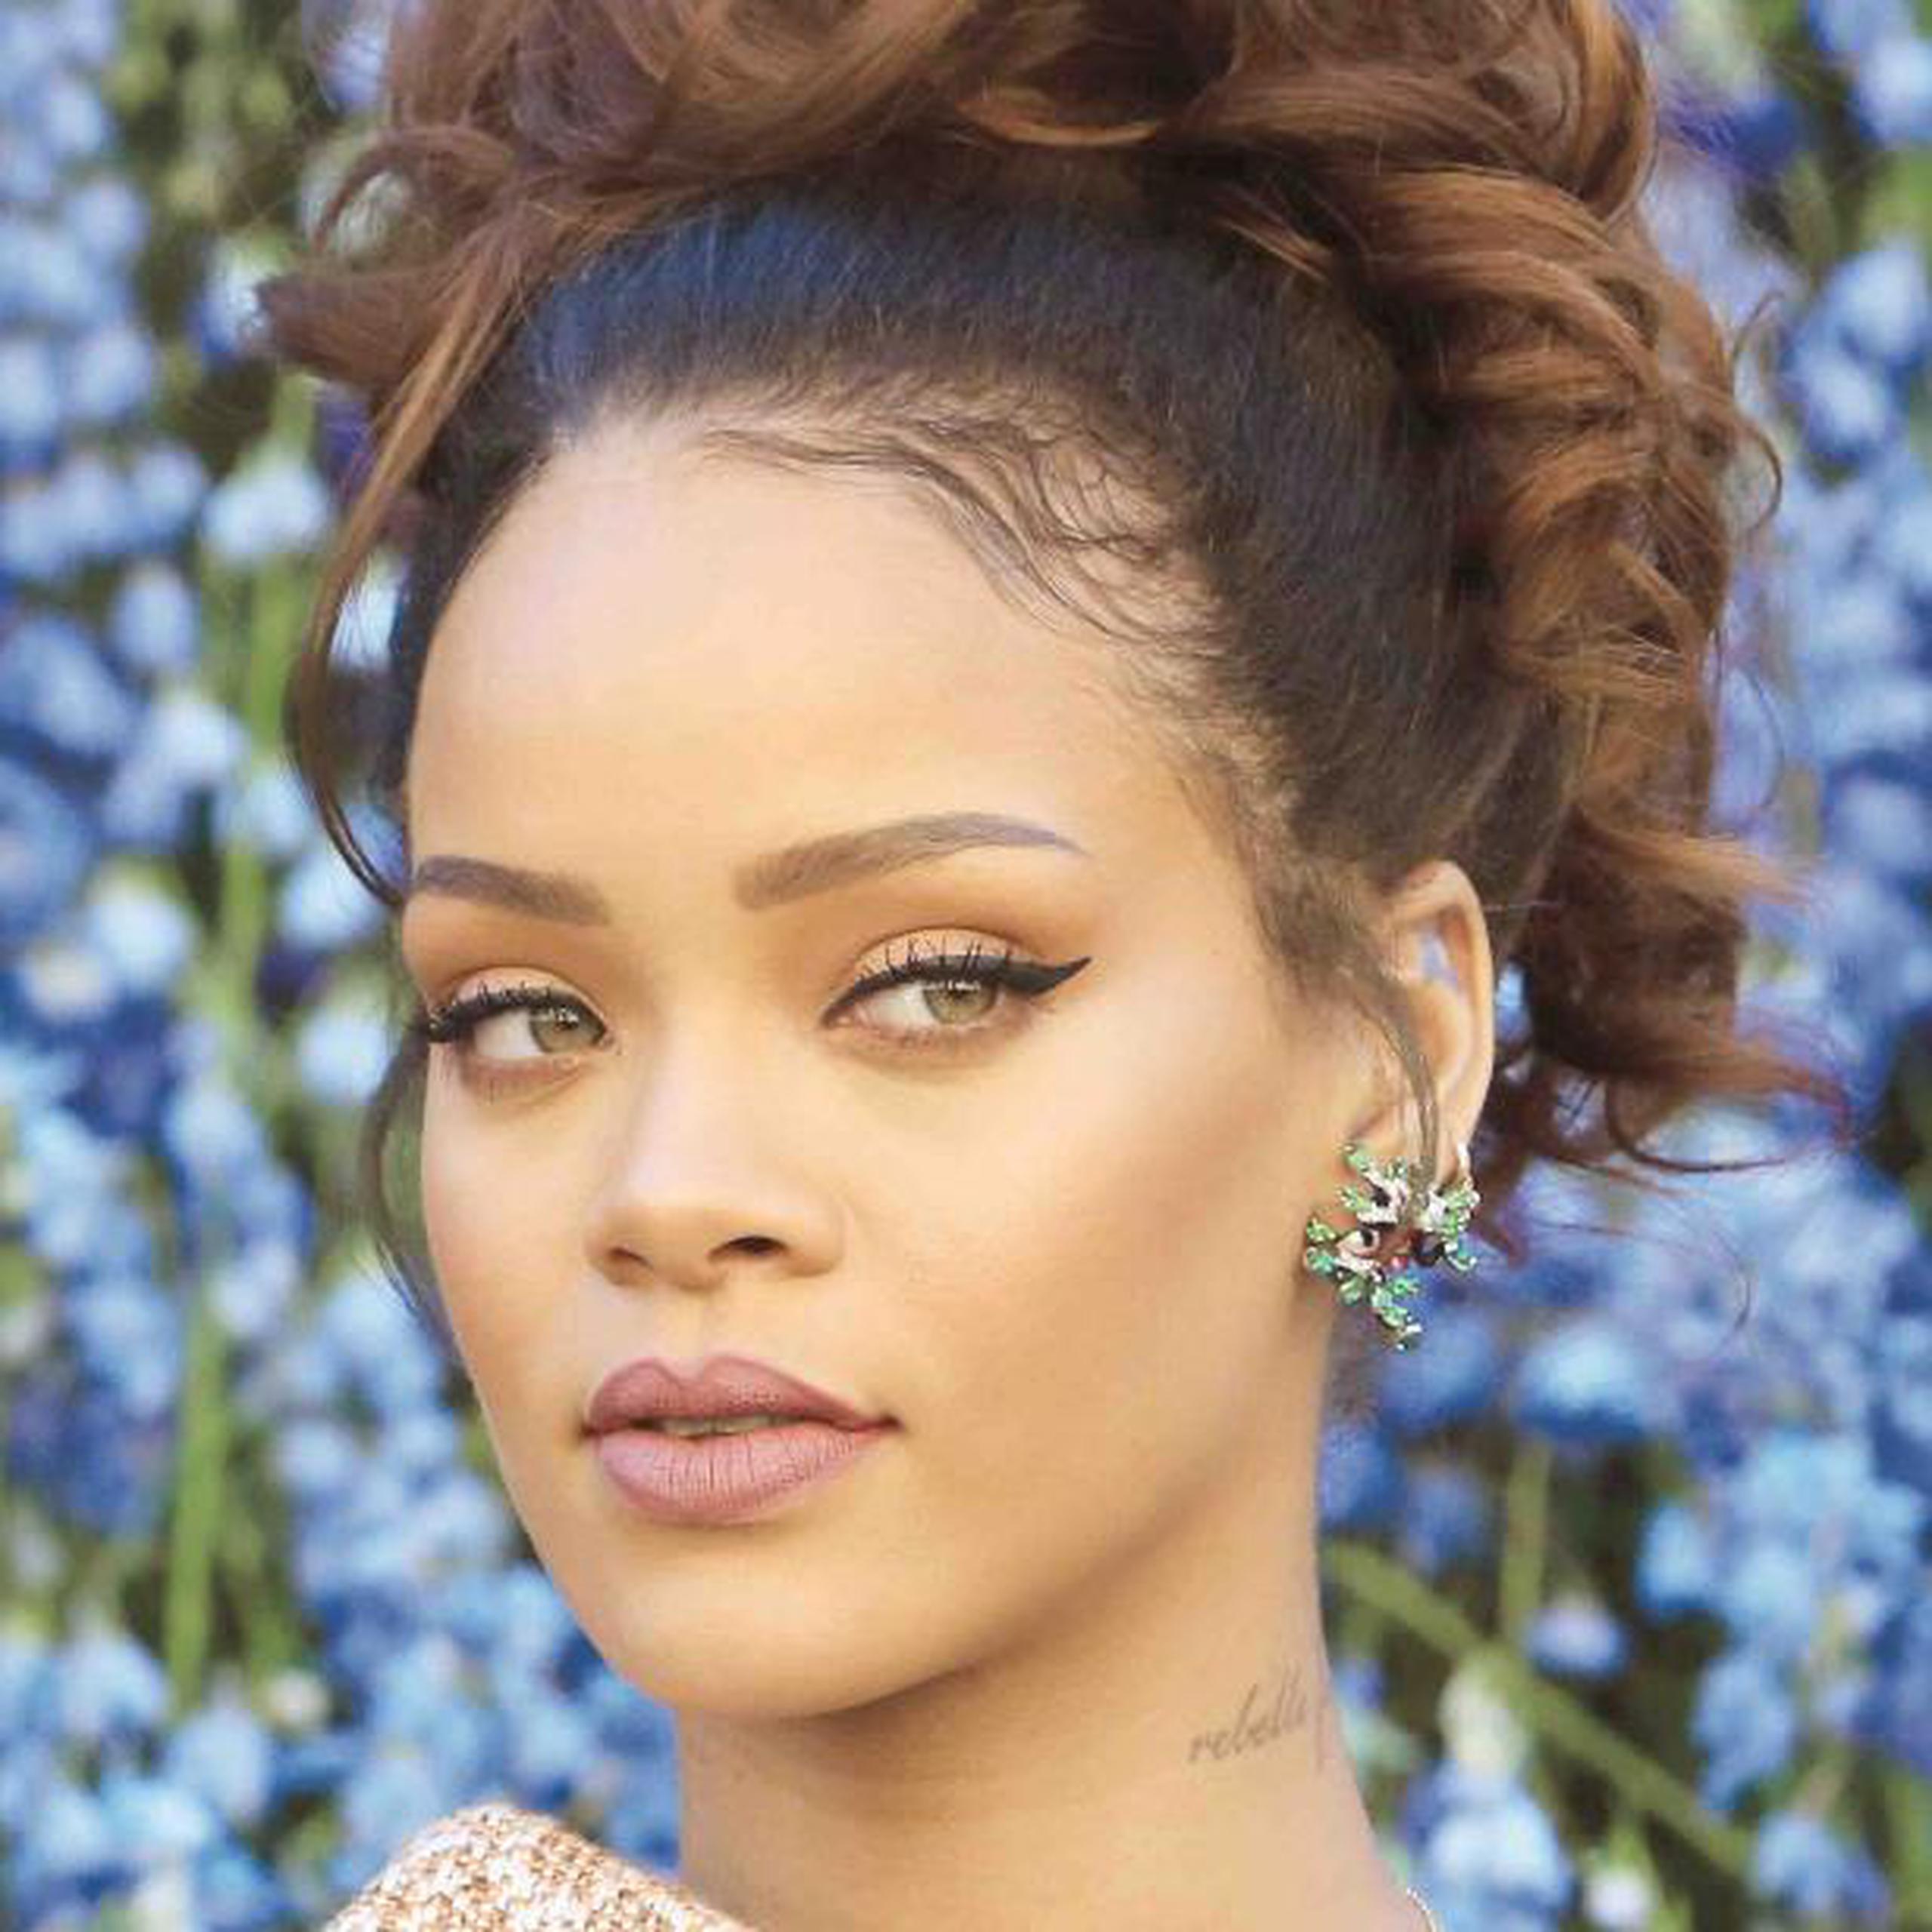 Famosas como la cantante Rihanna ha utilizado cócteles intravenosos para bajar de peso.  (Archivo)